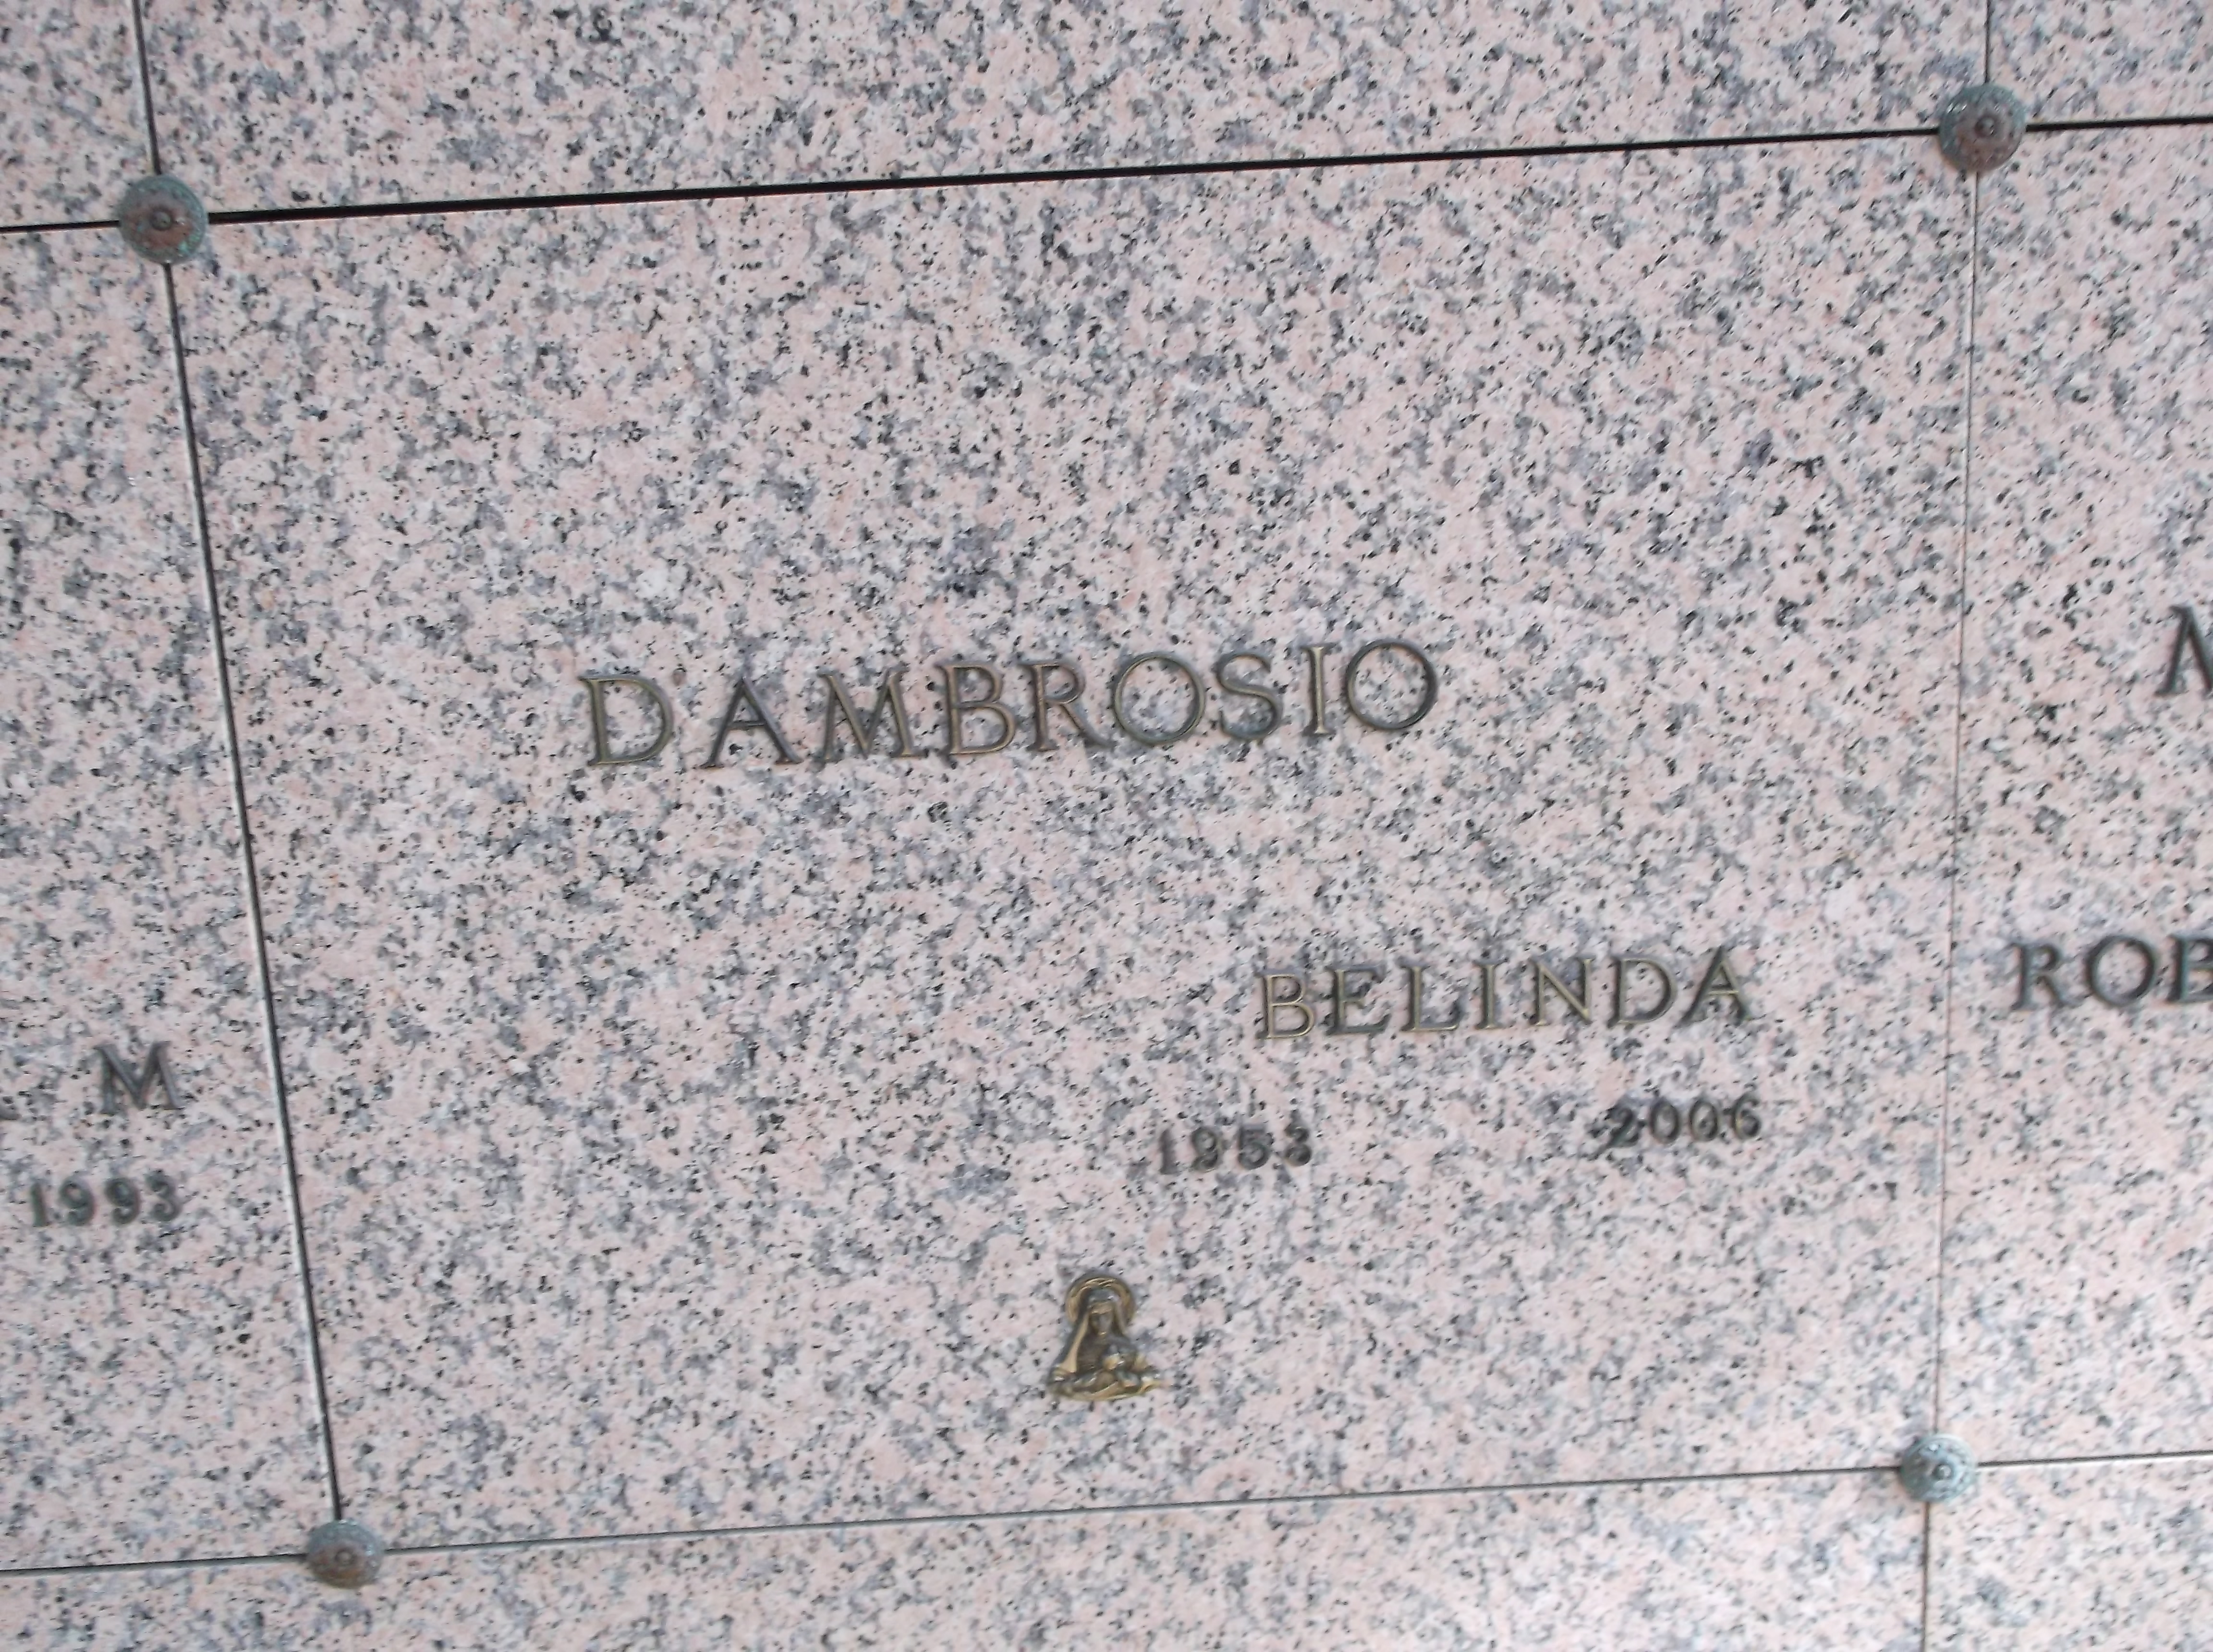 Belinda D'Ambrosio